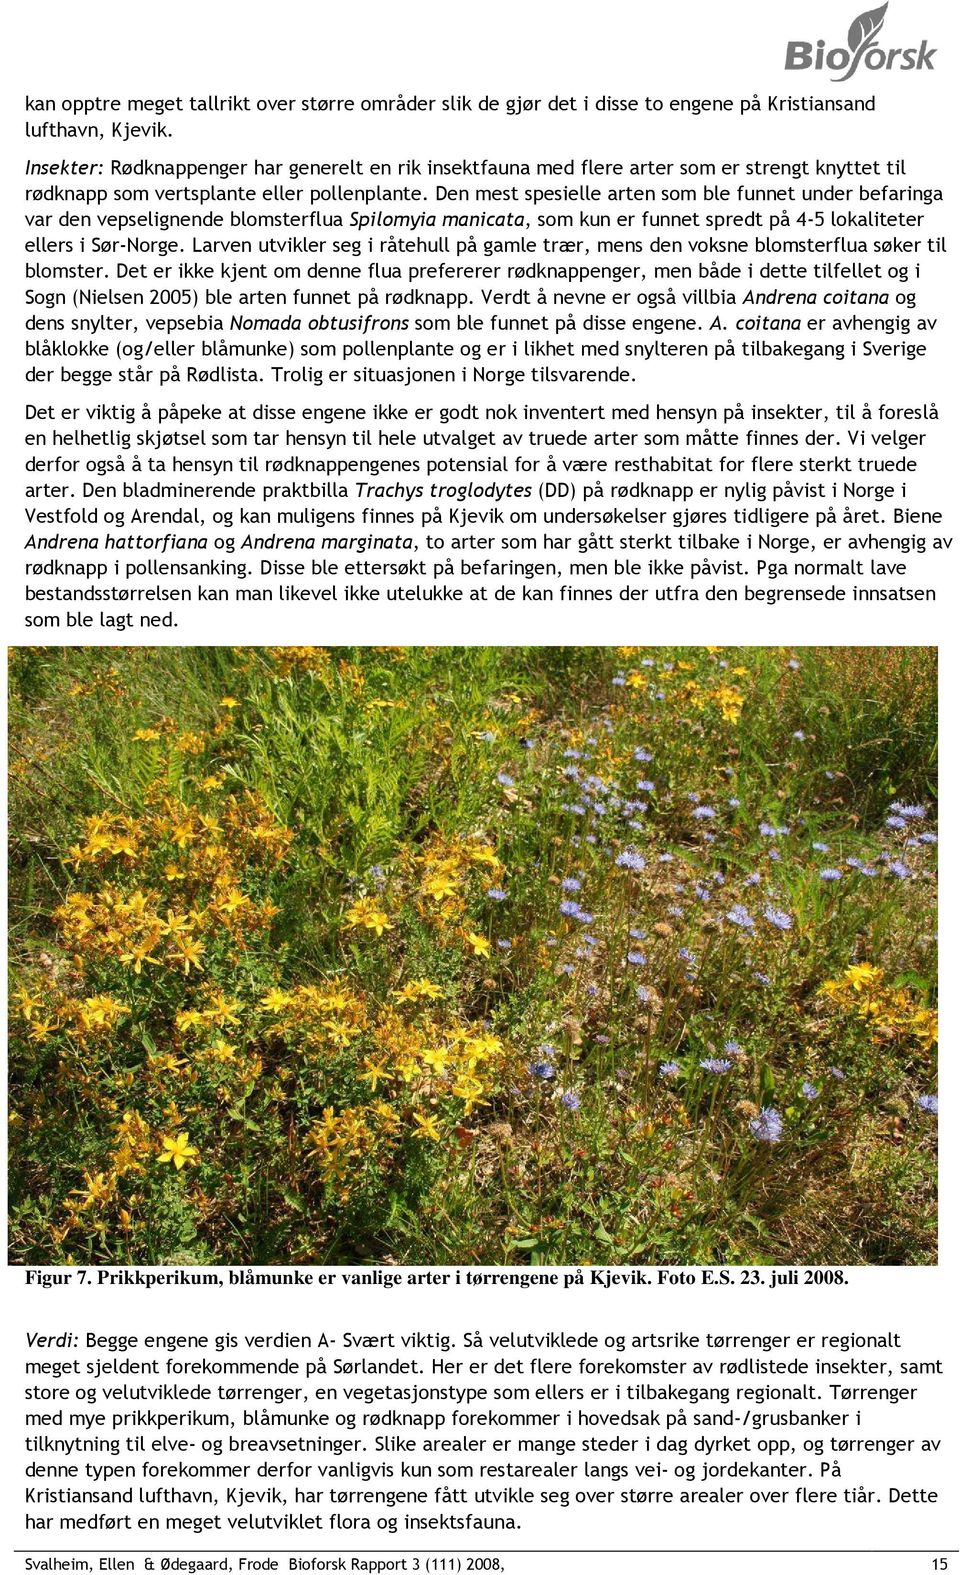 Den mest spesielle arten som ble funnet under befaringa var den vepselignende blomsterflua Spilomyia manicata, som kun er funnet spredt på 4-5 lokaliteter ellers i Sør-Norge.